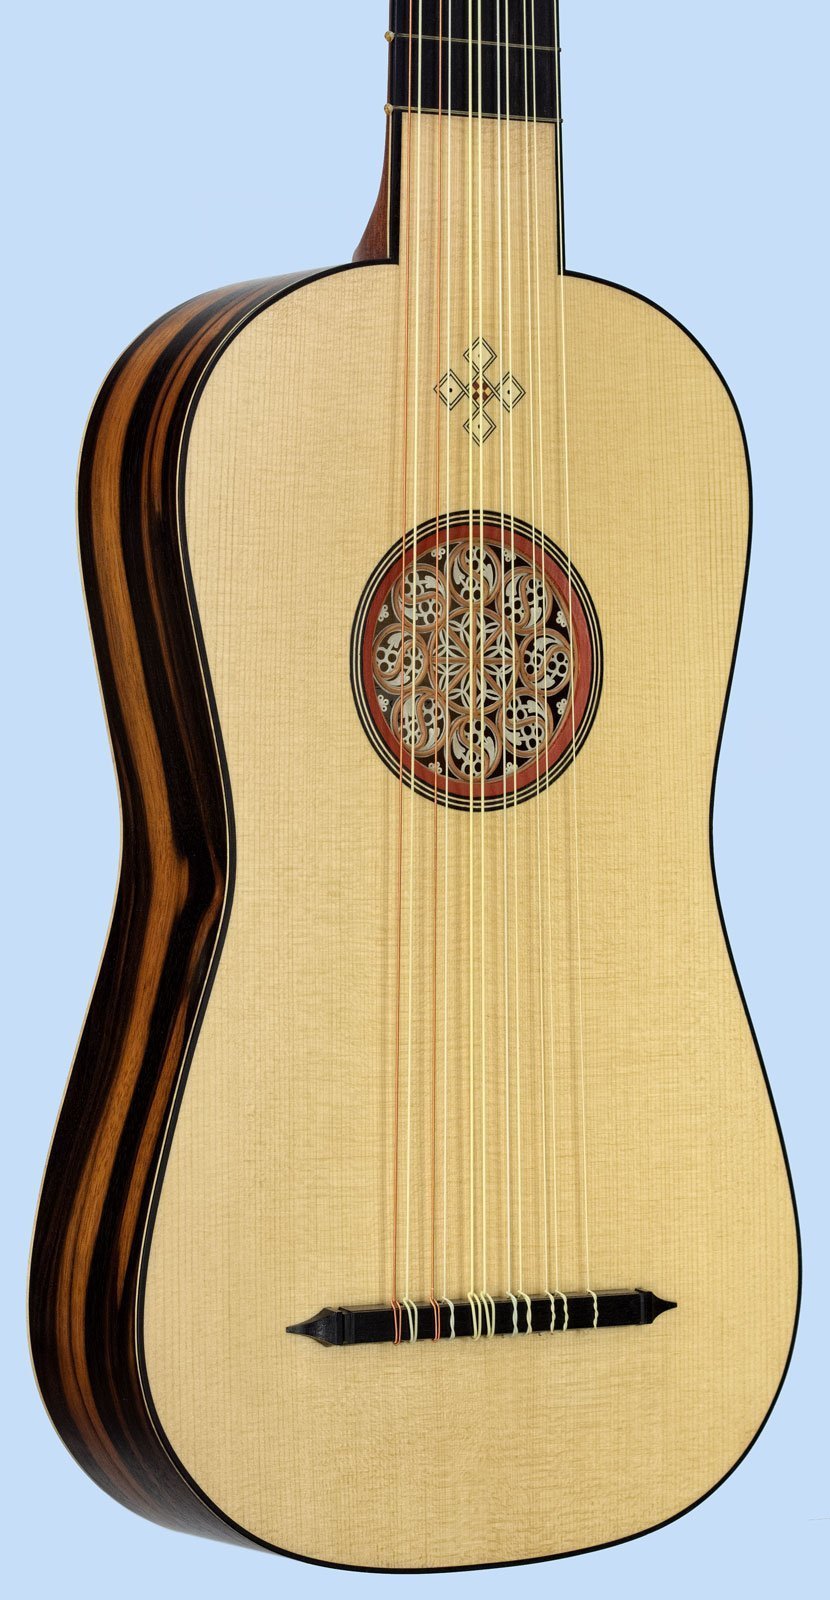 Flat-back vihuela in E or D, SL 68cm soundboard in perspective